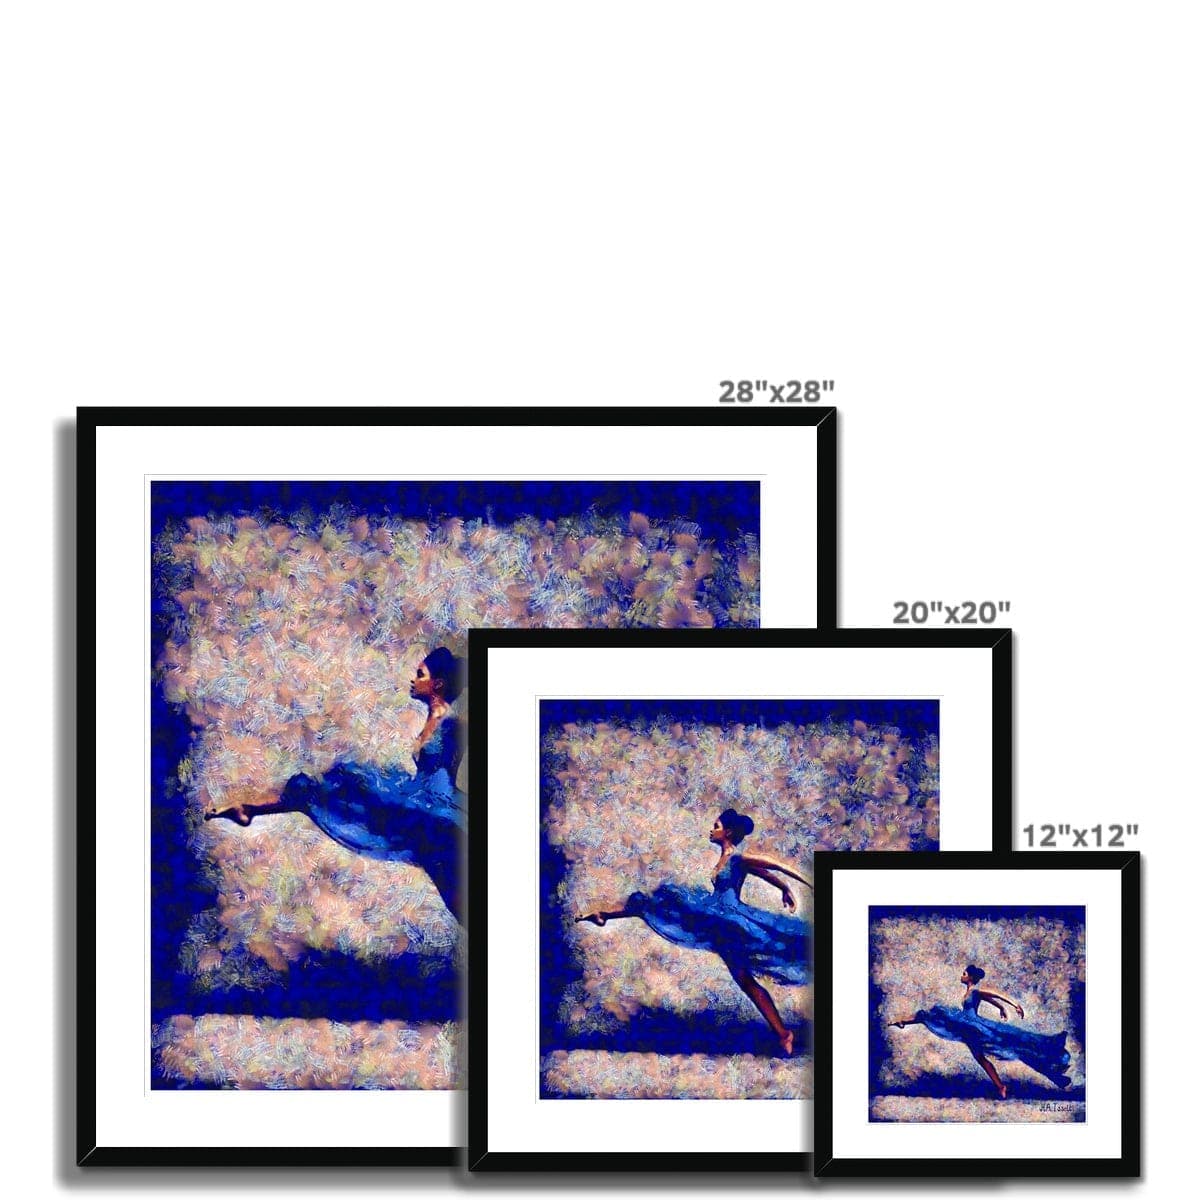 Dansa Moderna - Ballerina in Blue Framed & Mounted Print